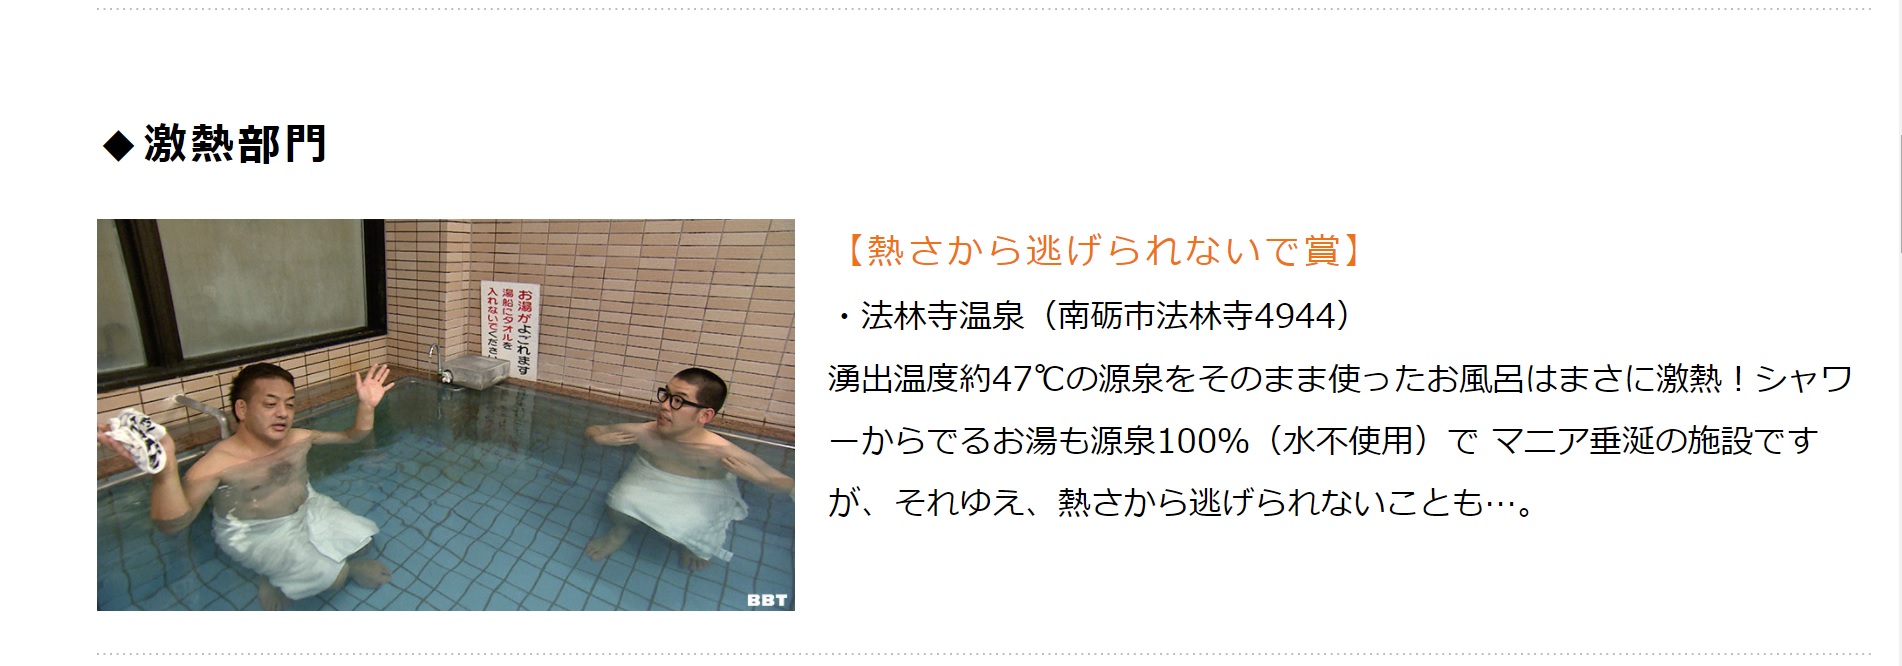 富山テレビ BBTスペシャル 『実はスゴイ！富山の秘湯名湯アワード』 にて【激熱部門】「熱さから逃げられないで賞」を頂きました。